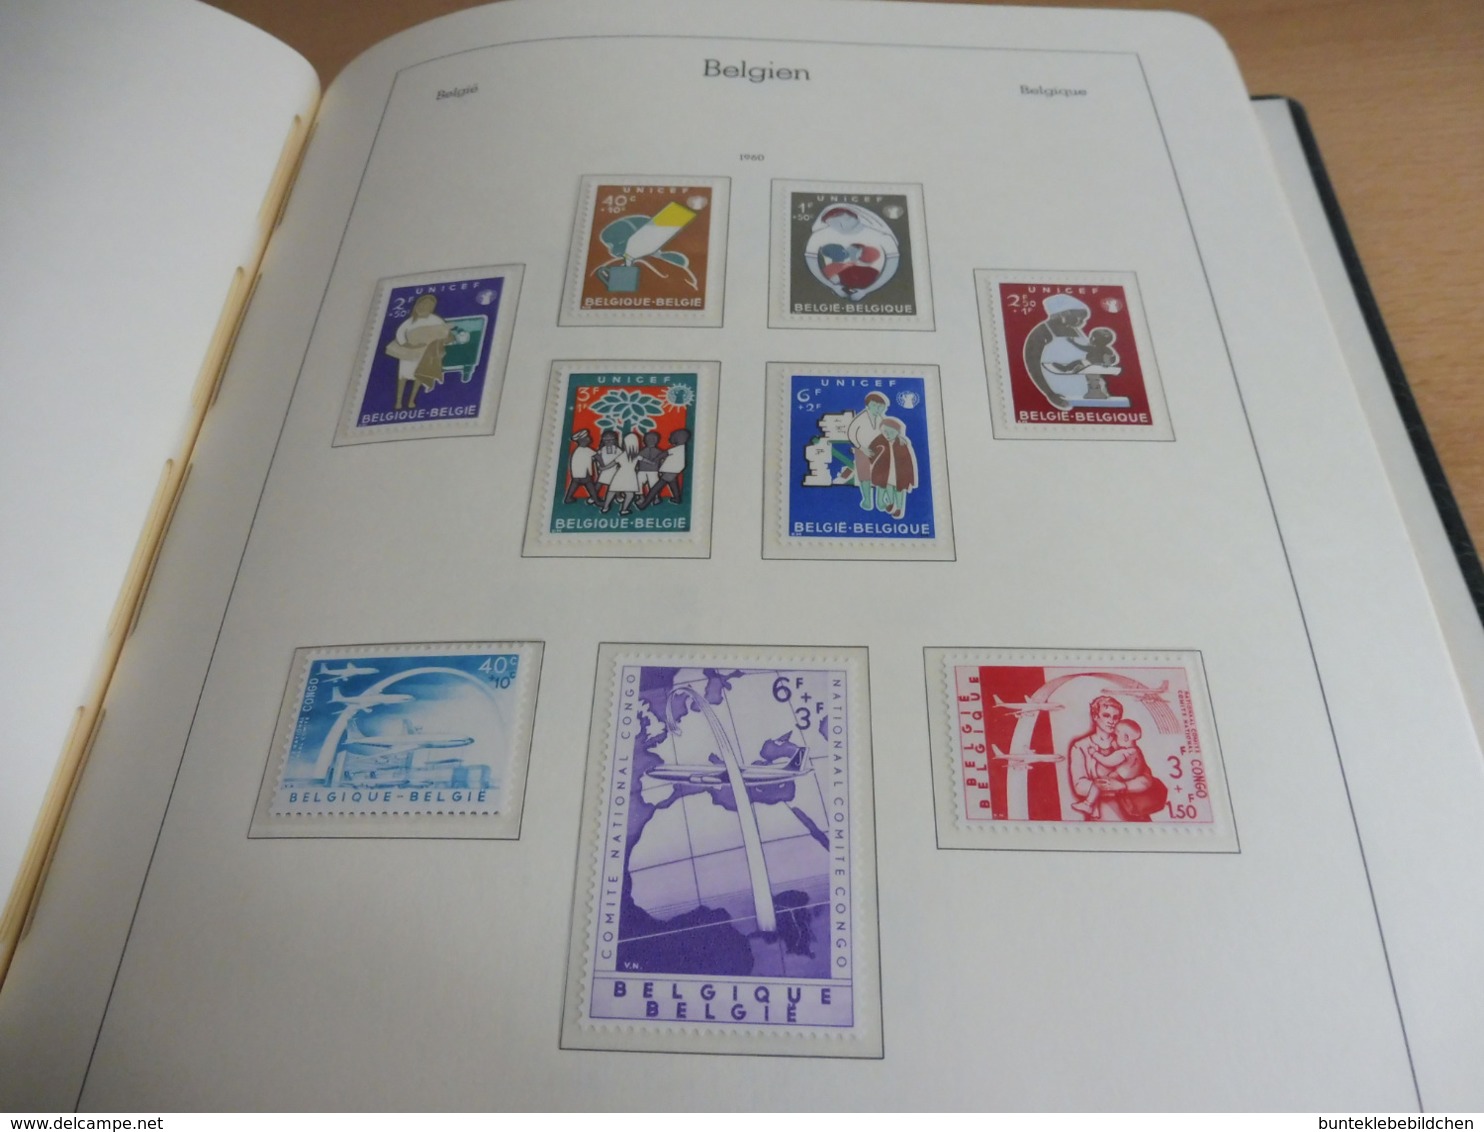 Belgien Sammlung aus 57-81, auf Leuchtturm; mit 99 Bildern NICHT ALLES BEBILDERT !!!